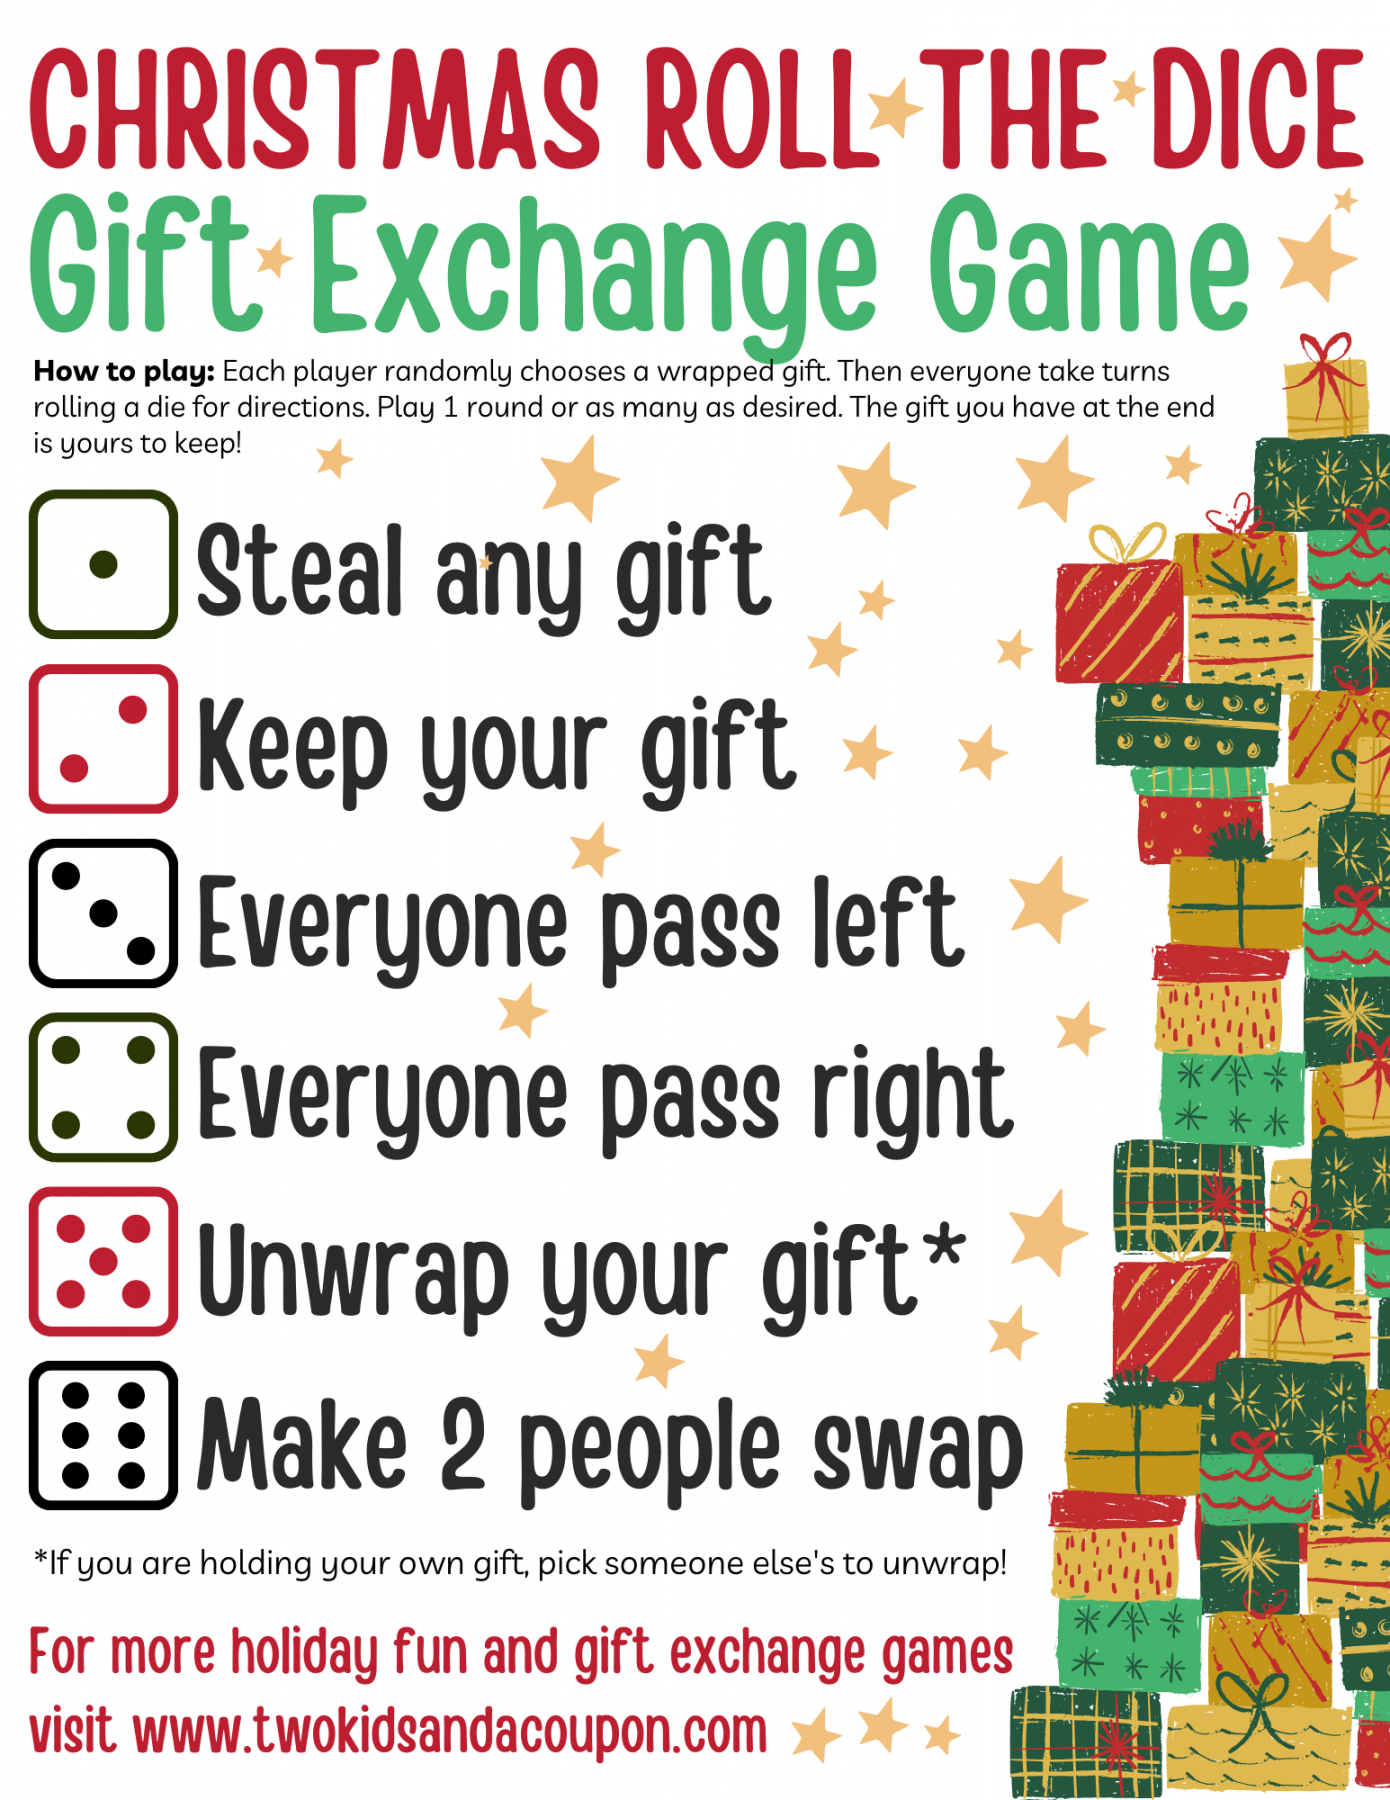 Free Printable Christmas Dice Game for Gift Exchanges - FREE Printables - Gift Exchange Dice Game Free Printable